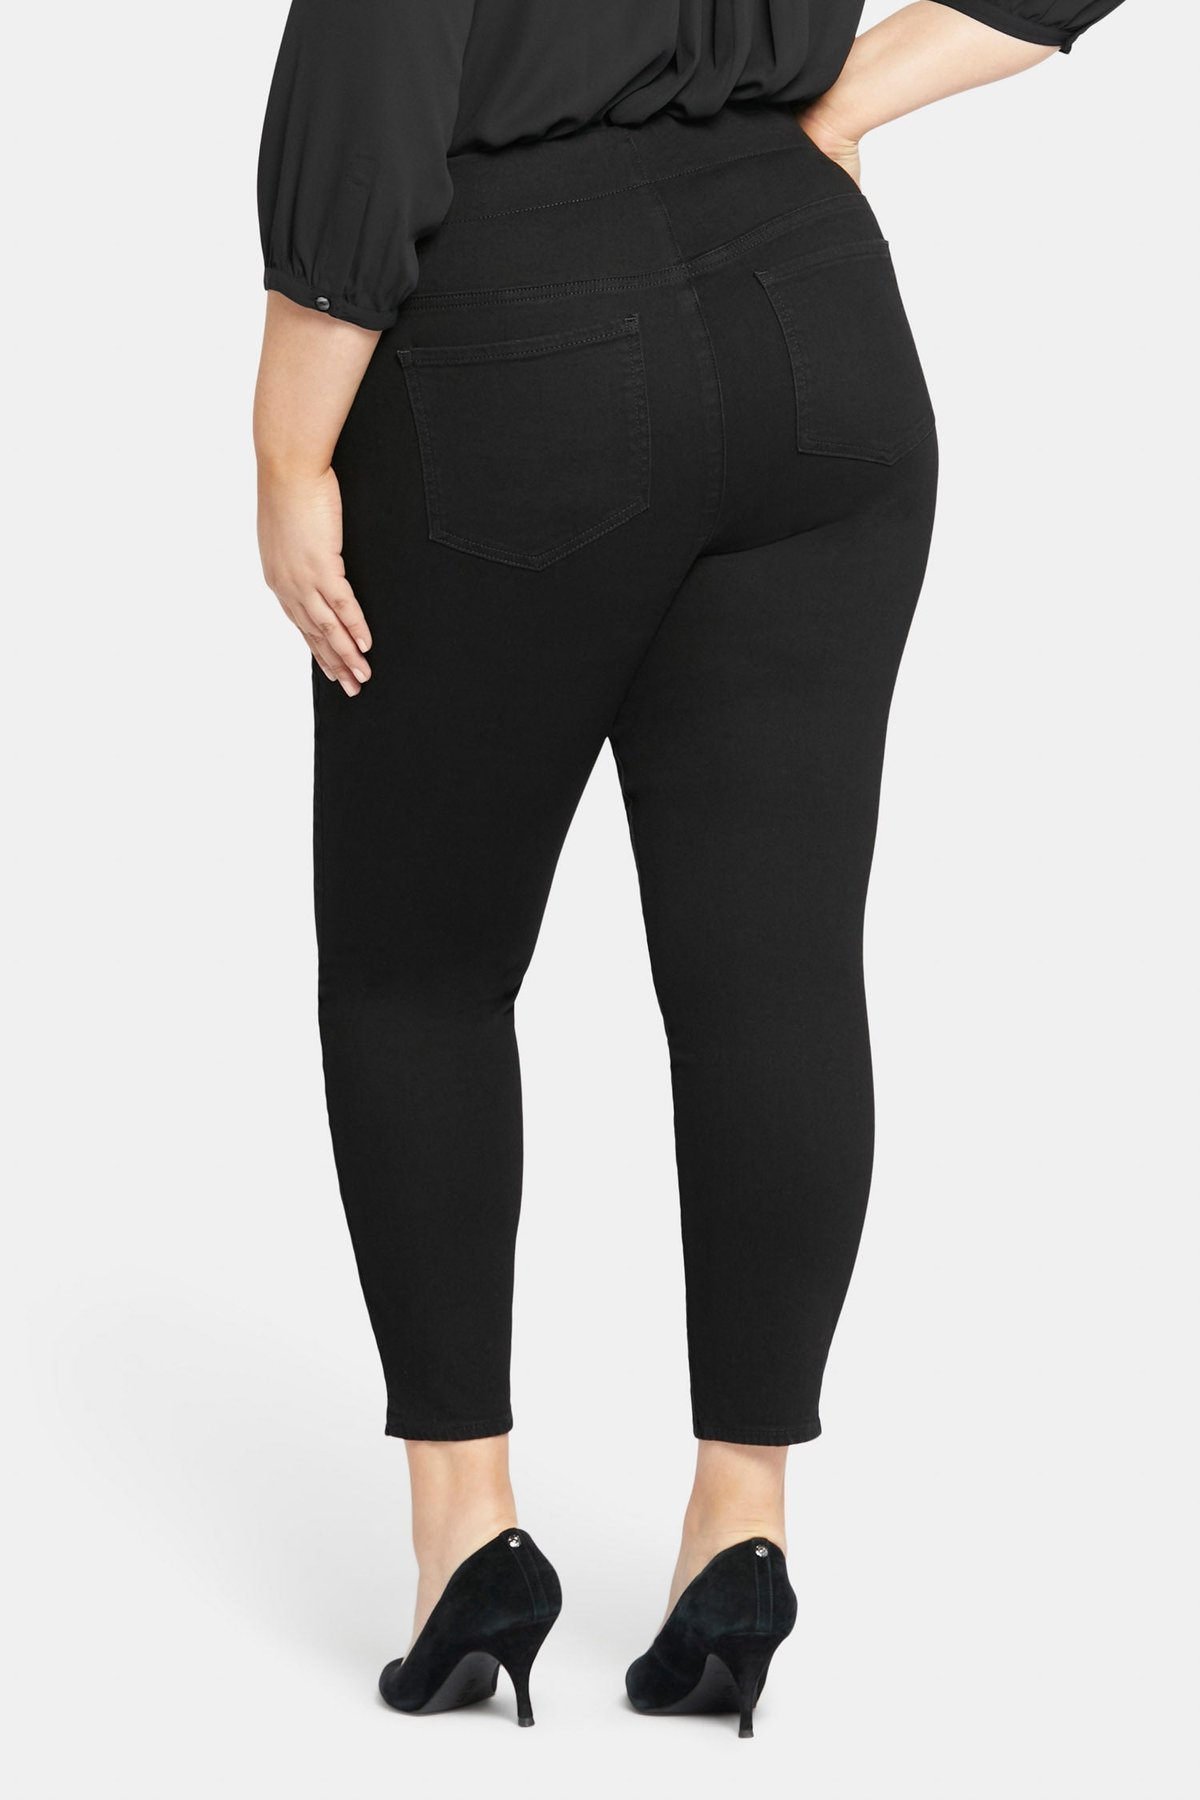 NYDJ Women's Slim Bootcut Pull-On Pants In Plus Size in Black, Size: 28W